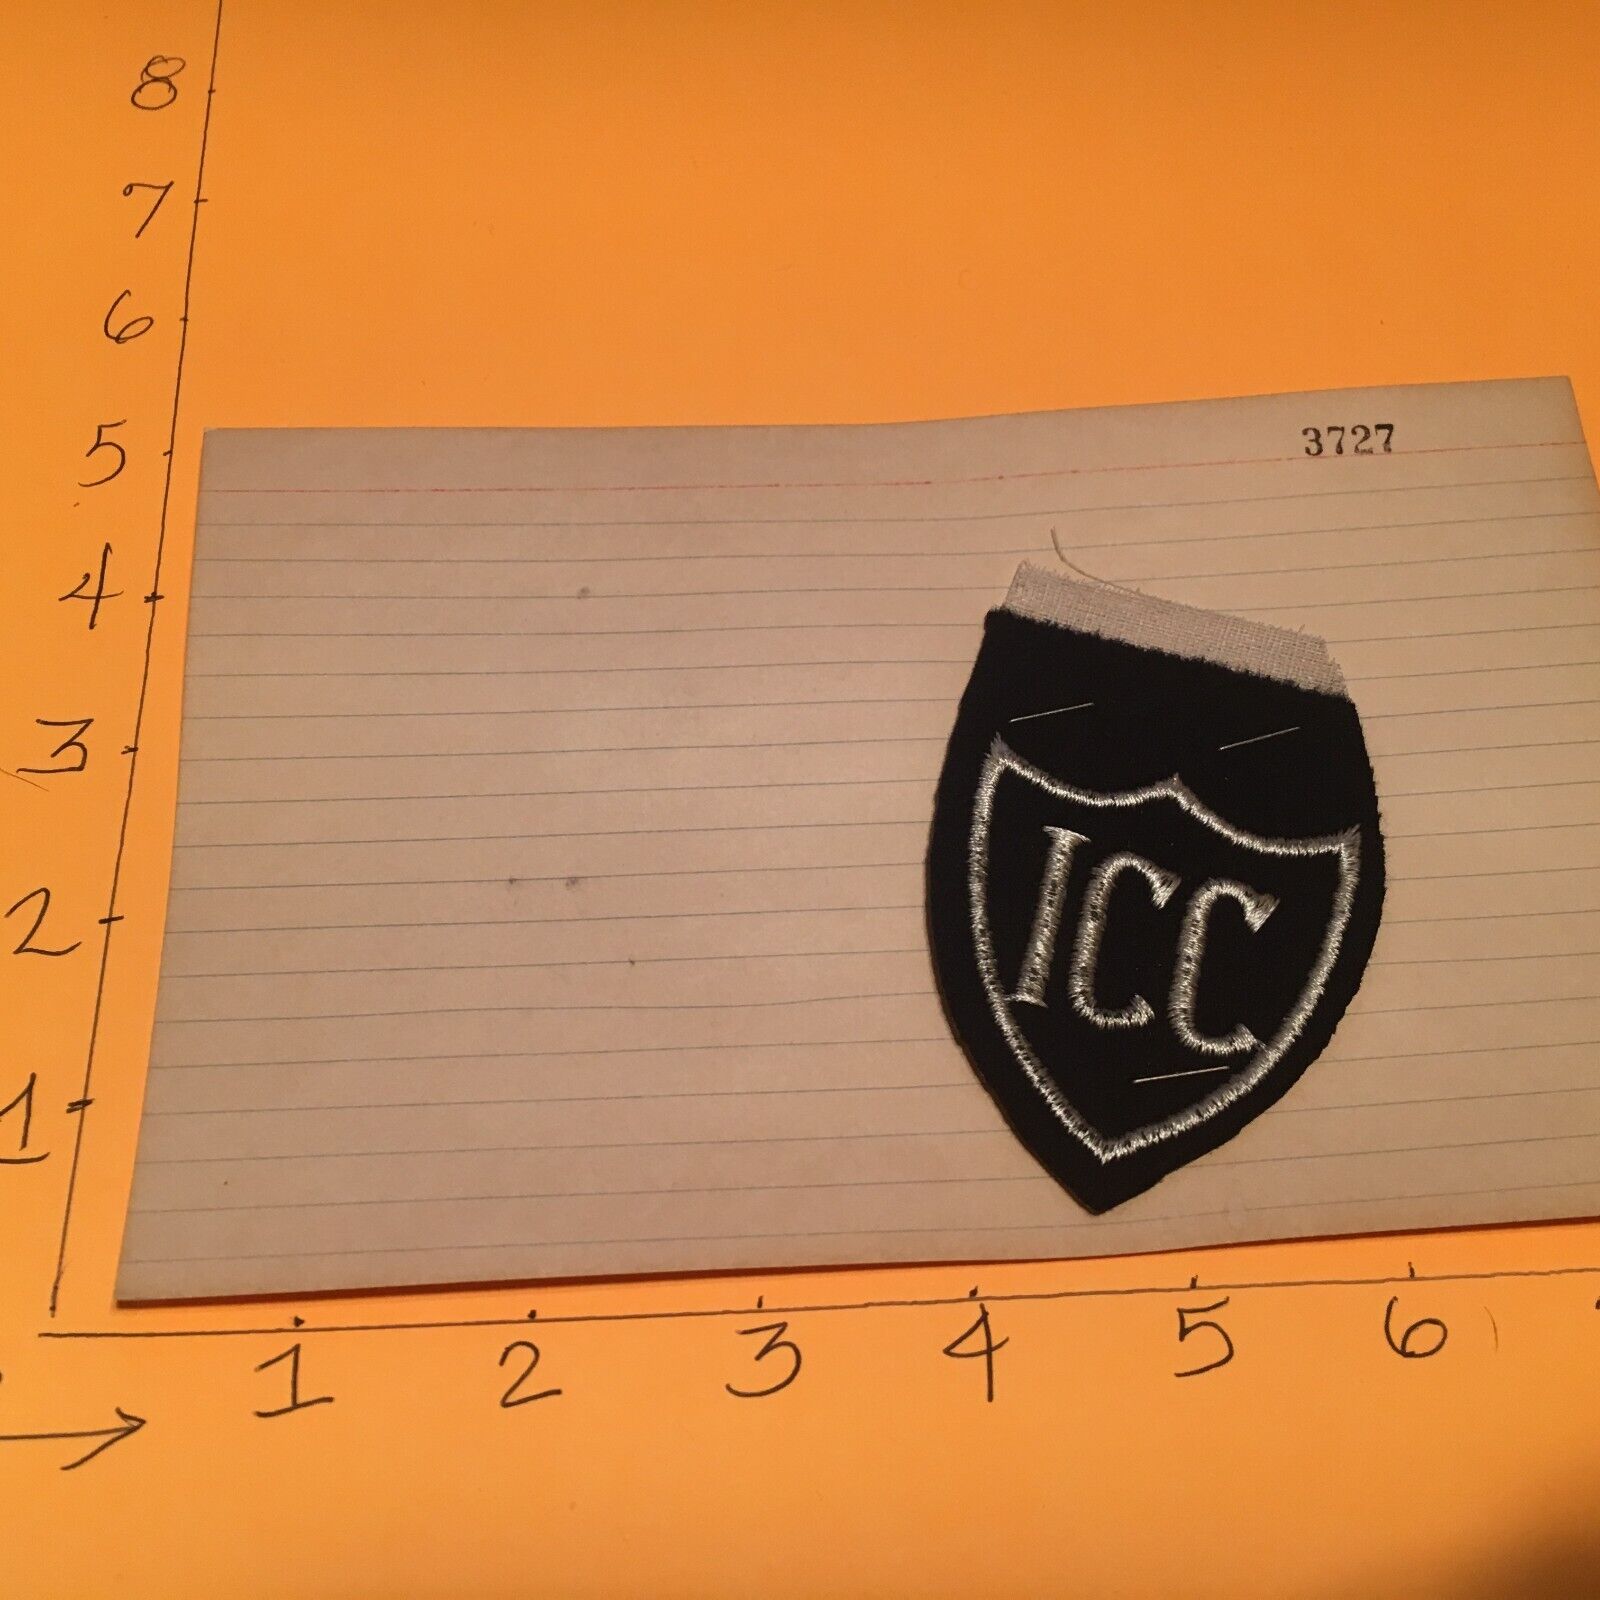 Vintage ICC  shield shape Patch 9/6/23